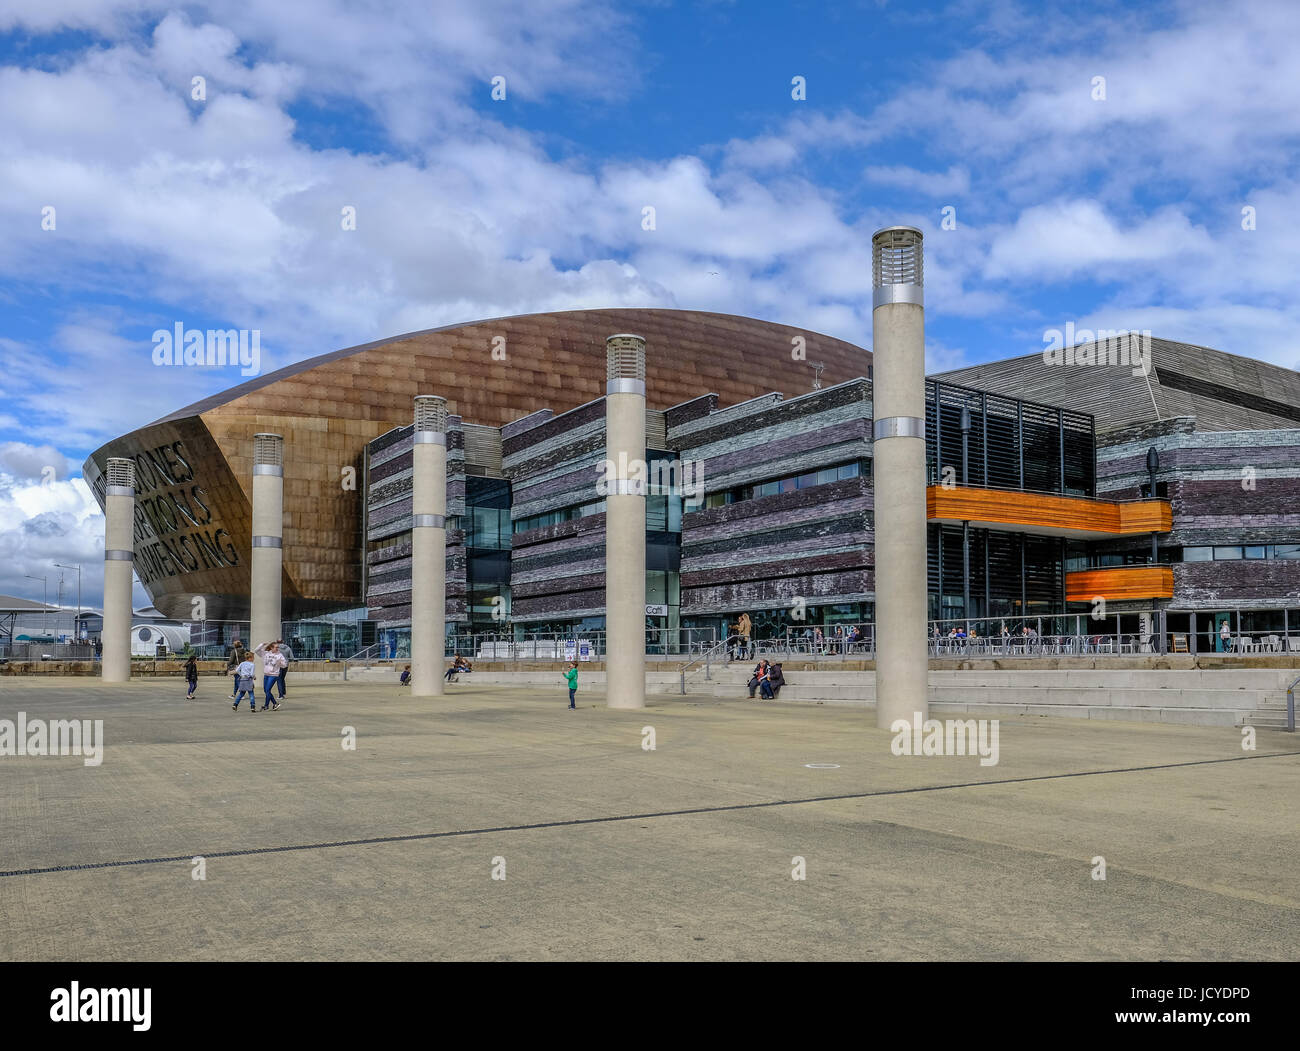 Bucht von Cardiff, Wales - 20. Mai 2017: Millennium Centre for Arts mit Square, Schritte und Menschen. Stockfoto